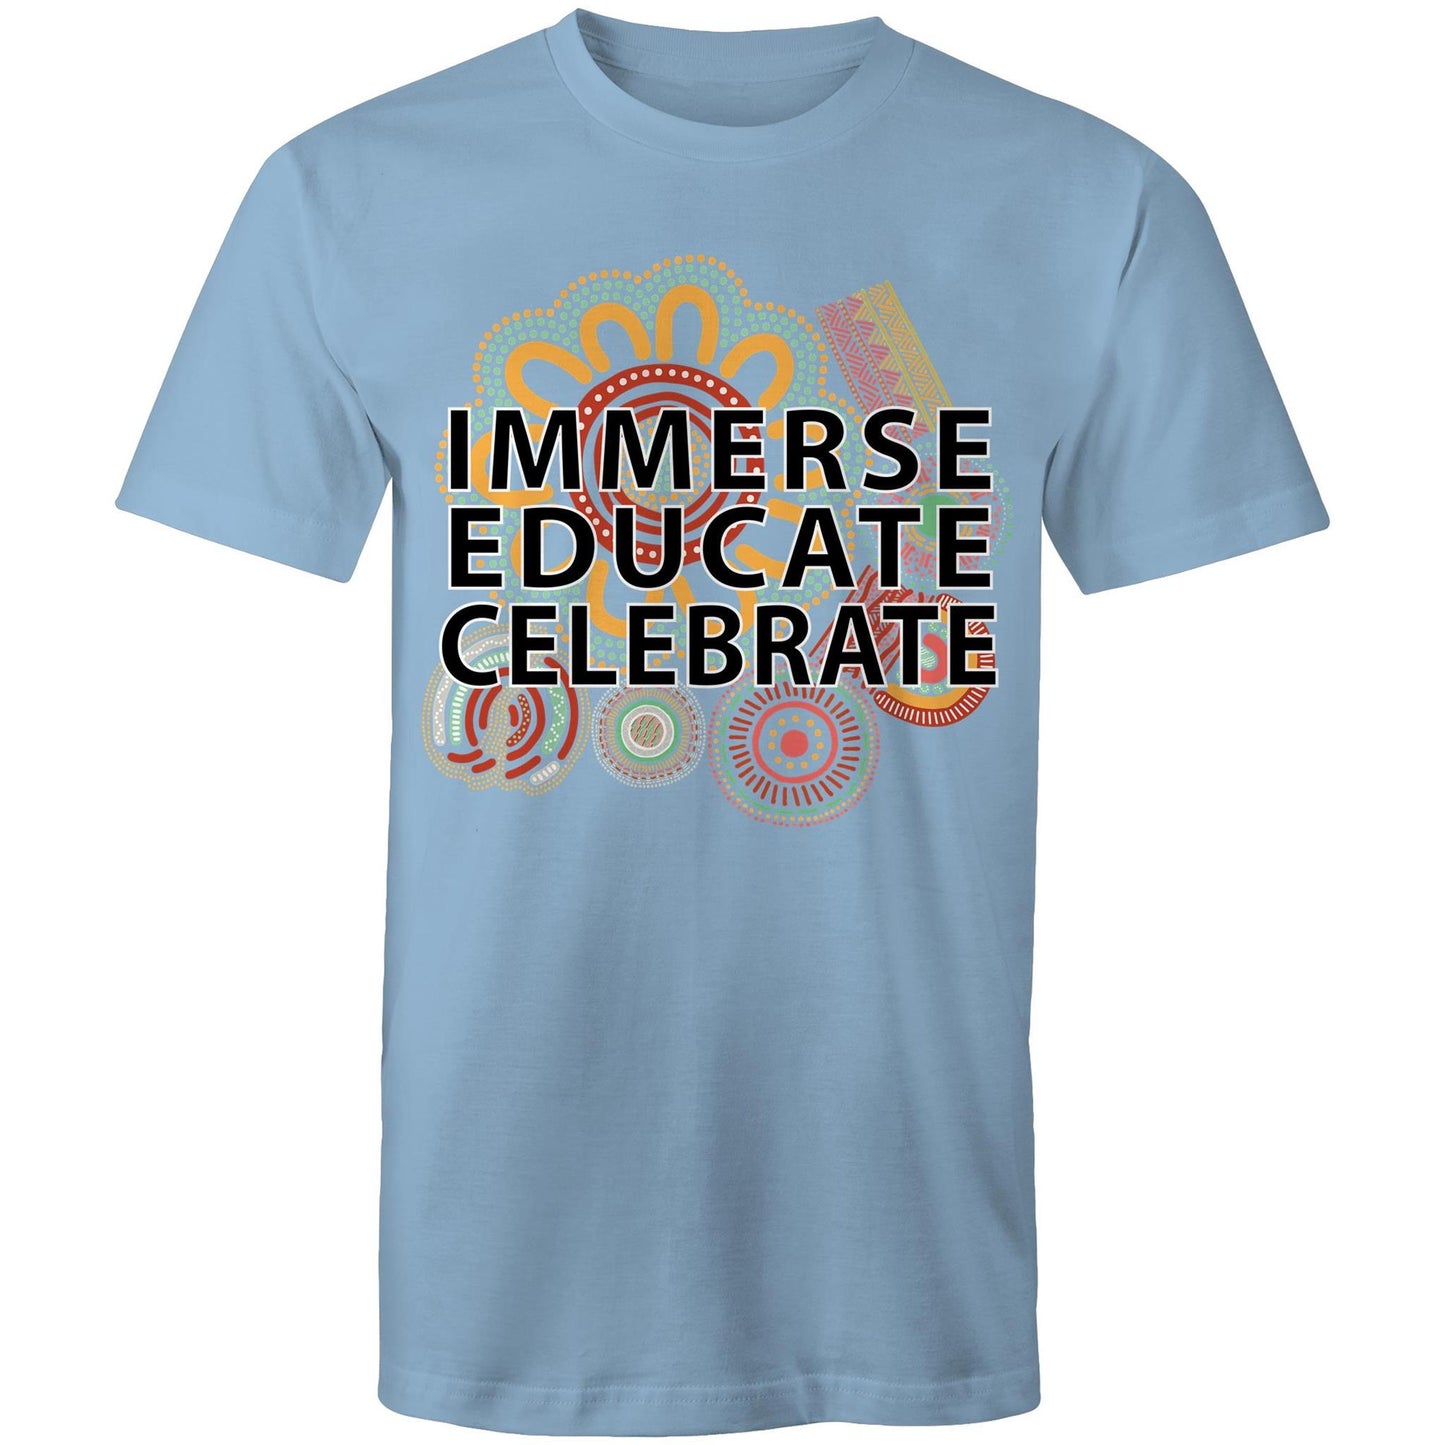 'Immerse, Educate, Celebrate' Aboriginal Design Unisex t-shirt